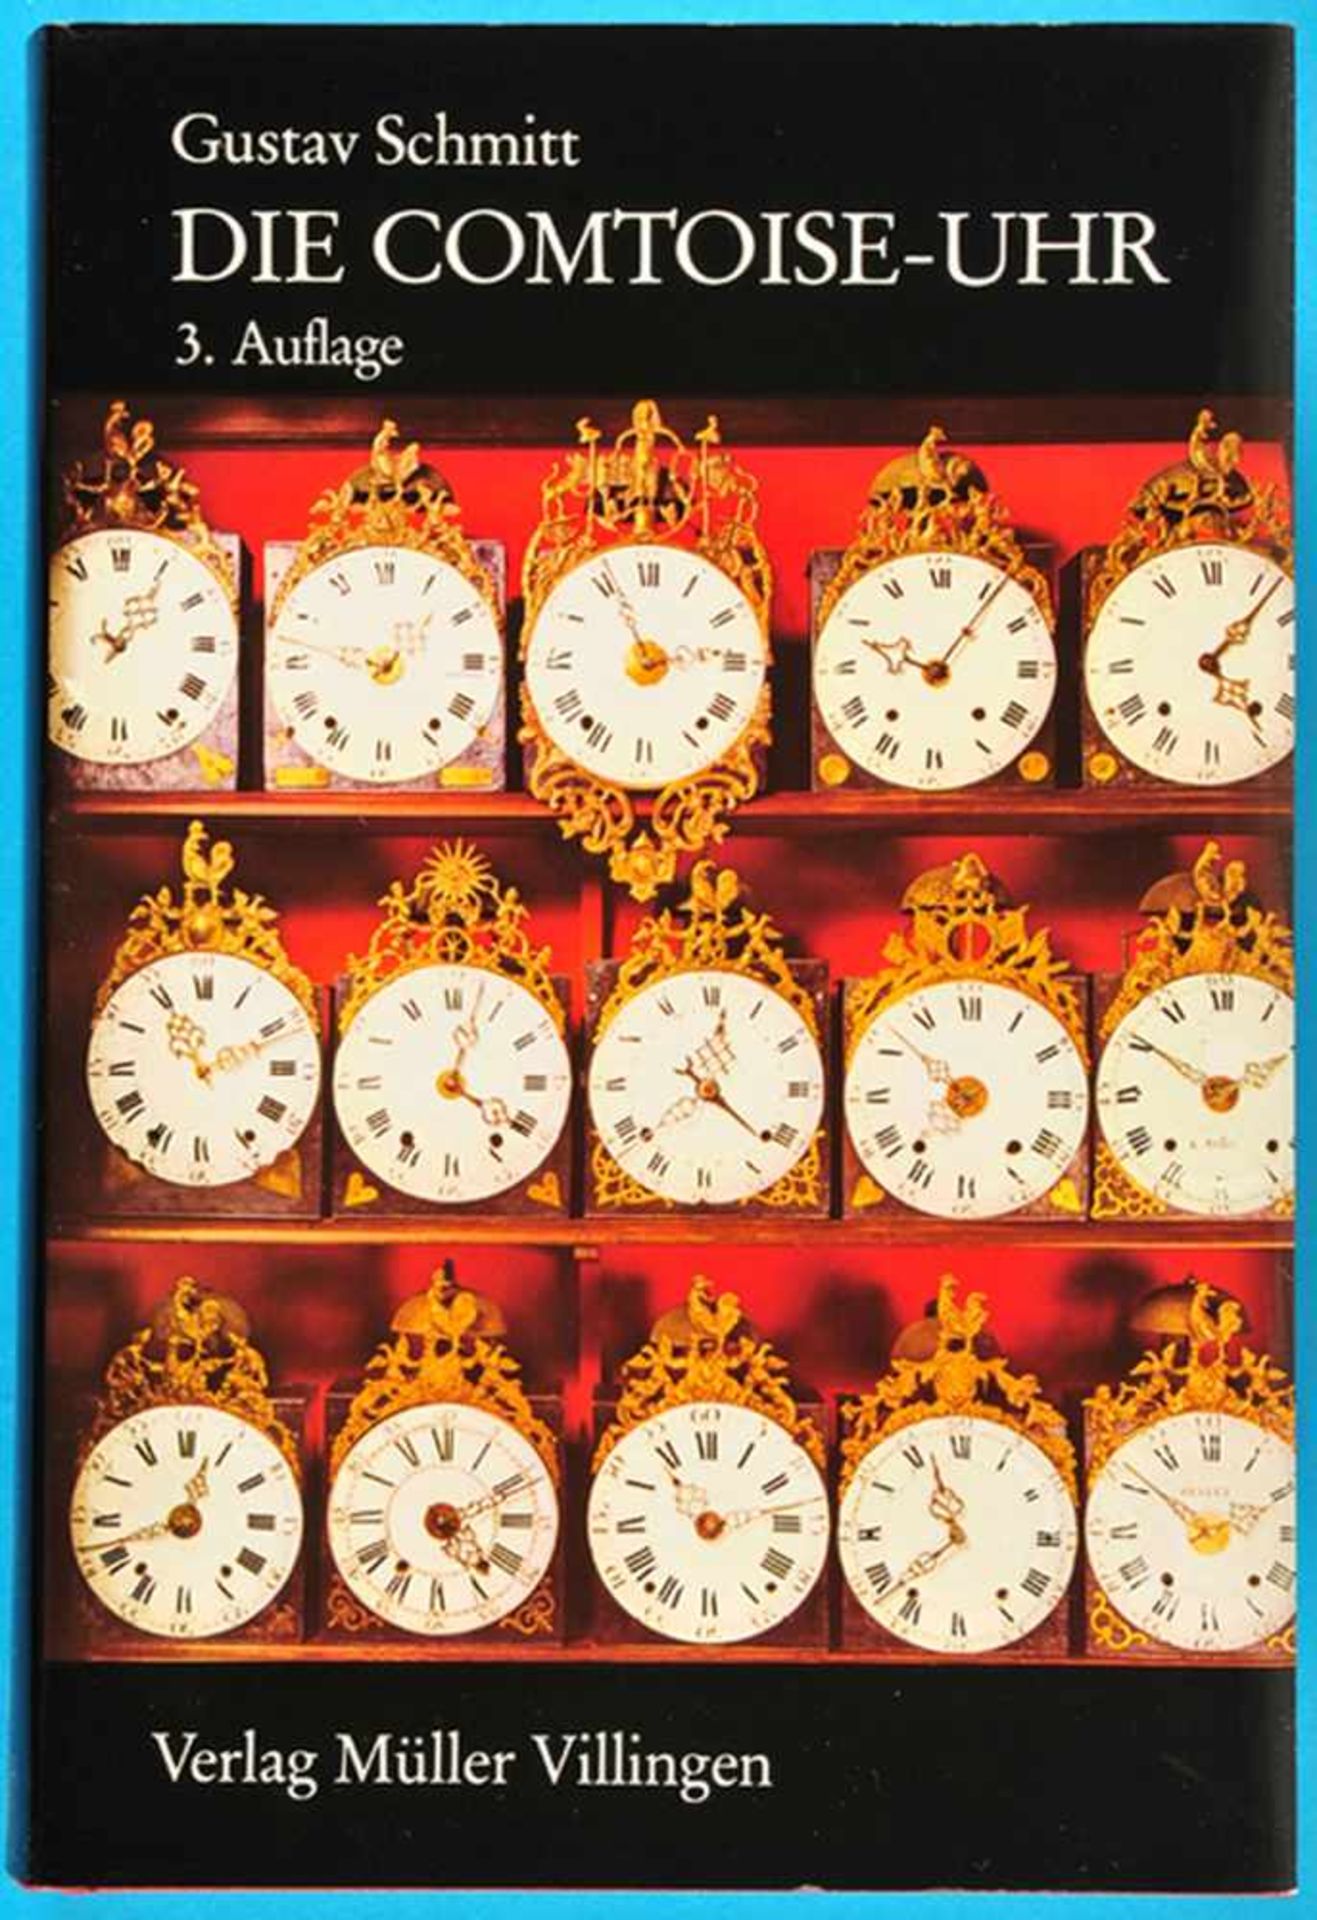 Gustav Schmitt, Die Comtoise-Uhr, 3. Auflage 1983